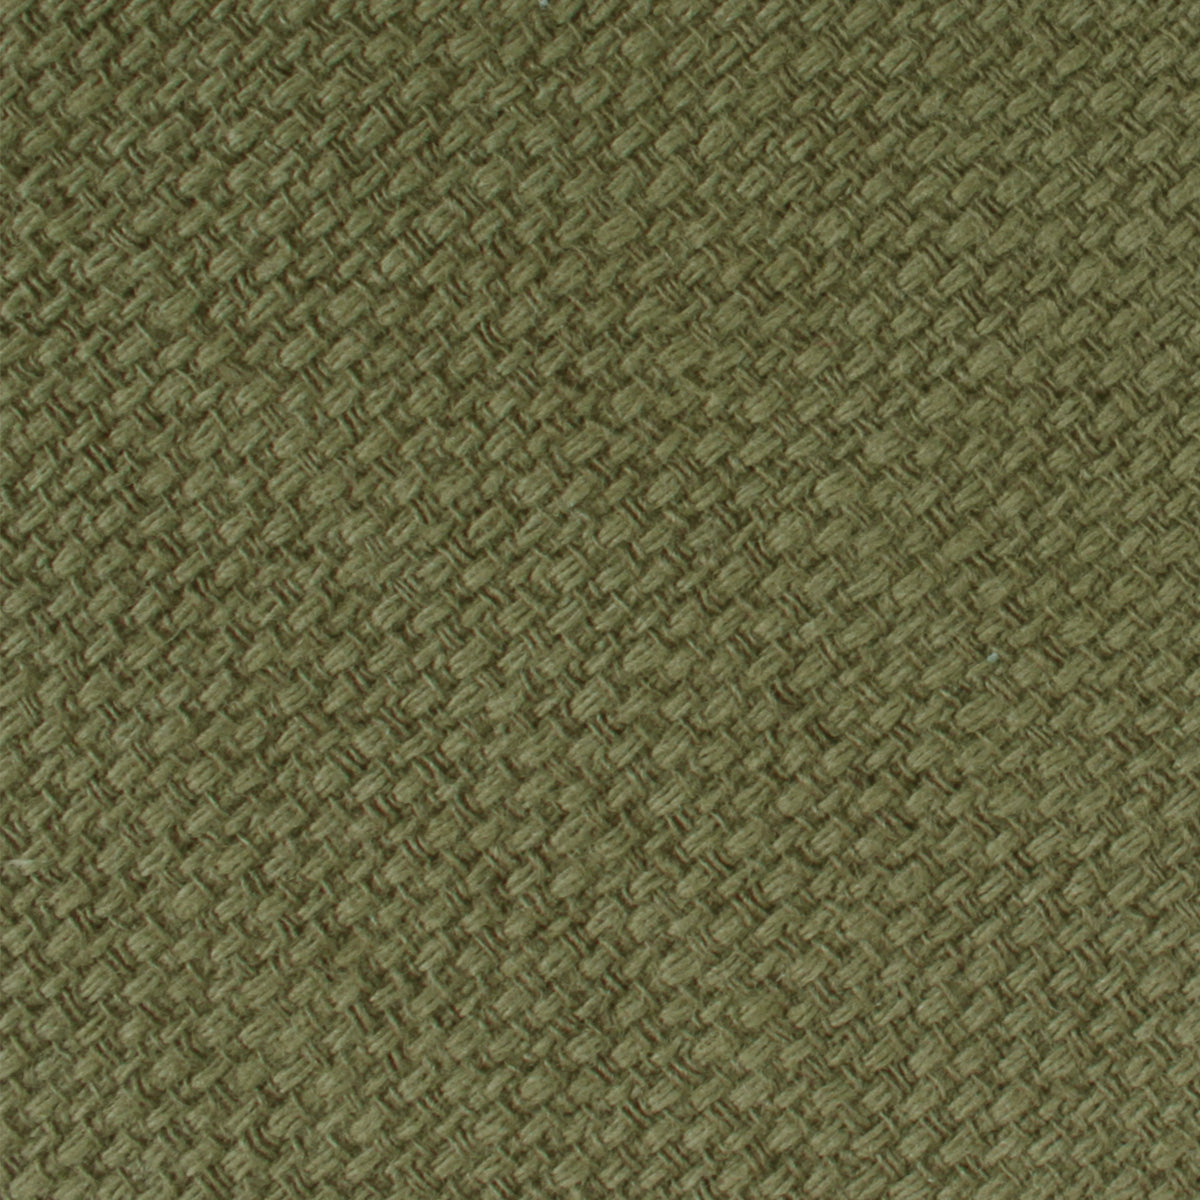 Olive Green Basket Weave Linen Pocket Square Fabric